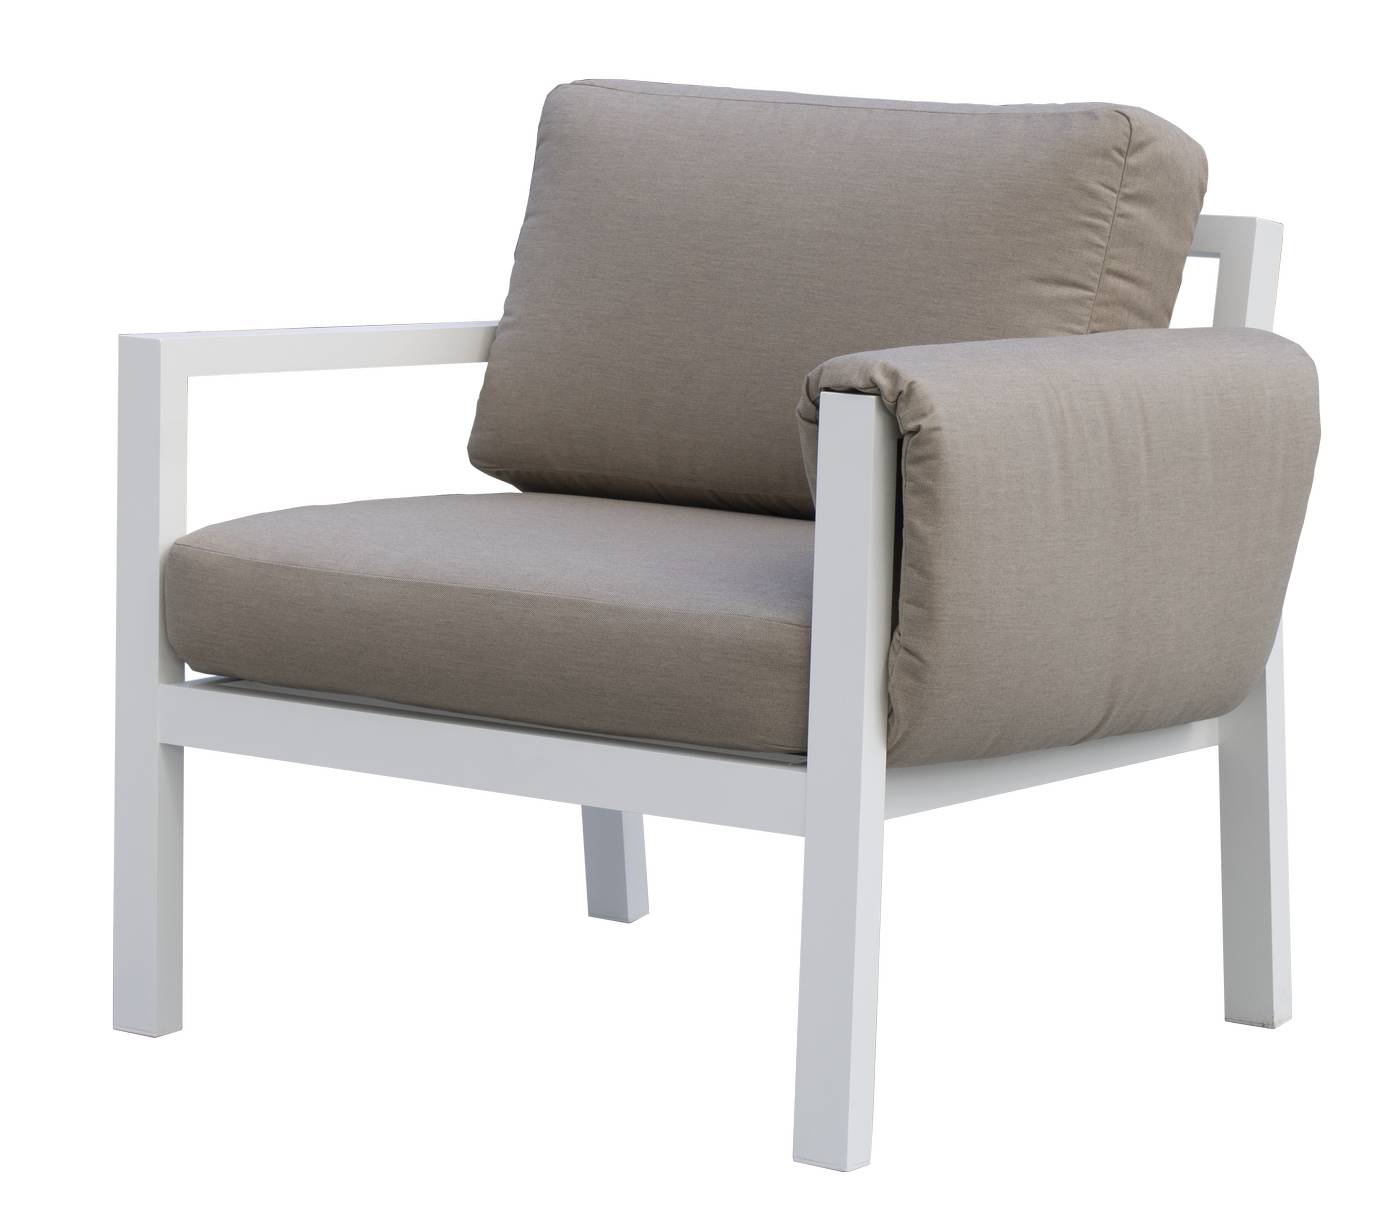 Set Arizona-88 - Conjunto aluminio con opción de cojines en los brazos: sofá de 3 plazas + 2 sillones + 1 mesa de centro. En color: blanco, antracita, marrón, champagne o plata.